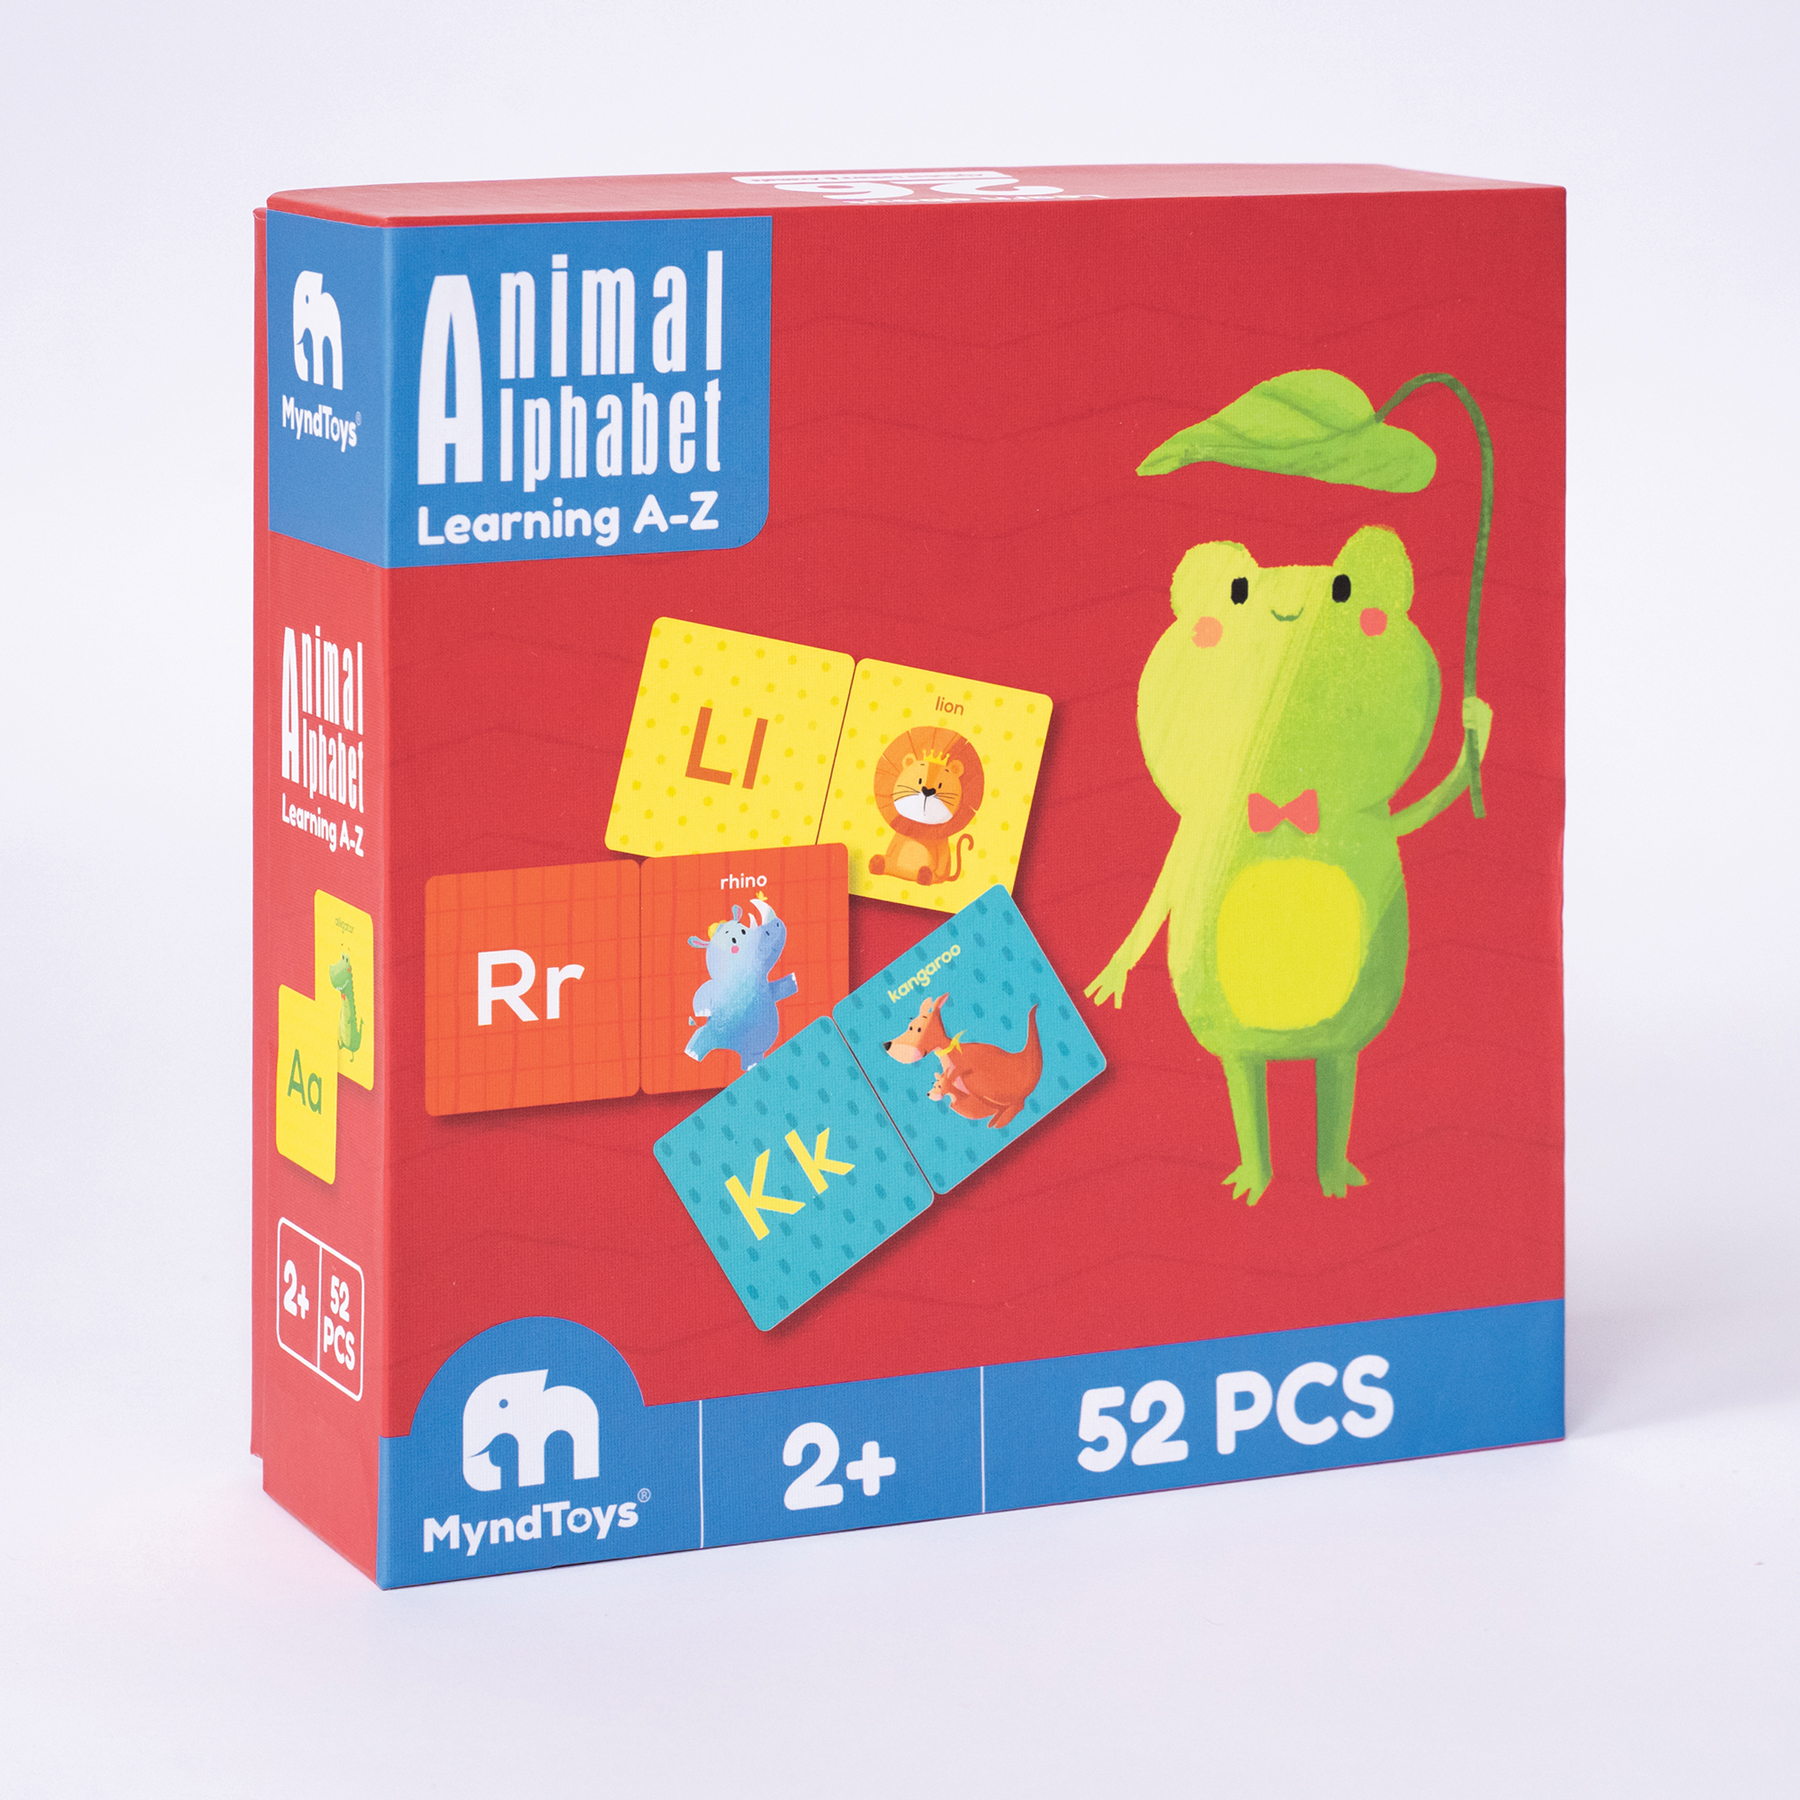 Đồ chơi Giáo dục MyndToys Animal Alphabet Learning A-Z Thẻ học tiếng Anh